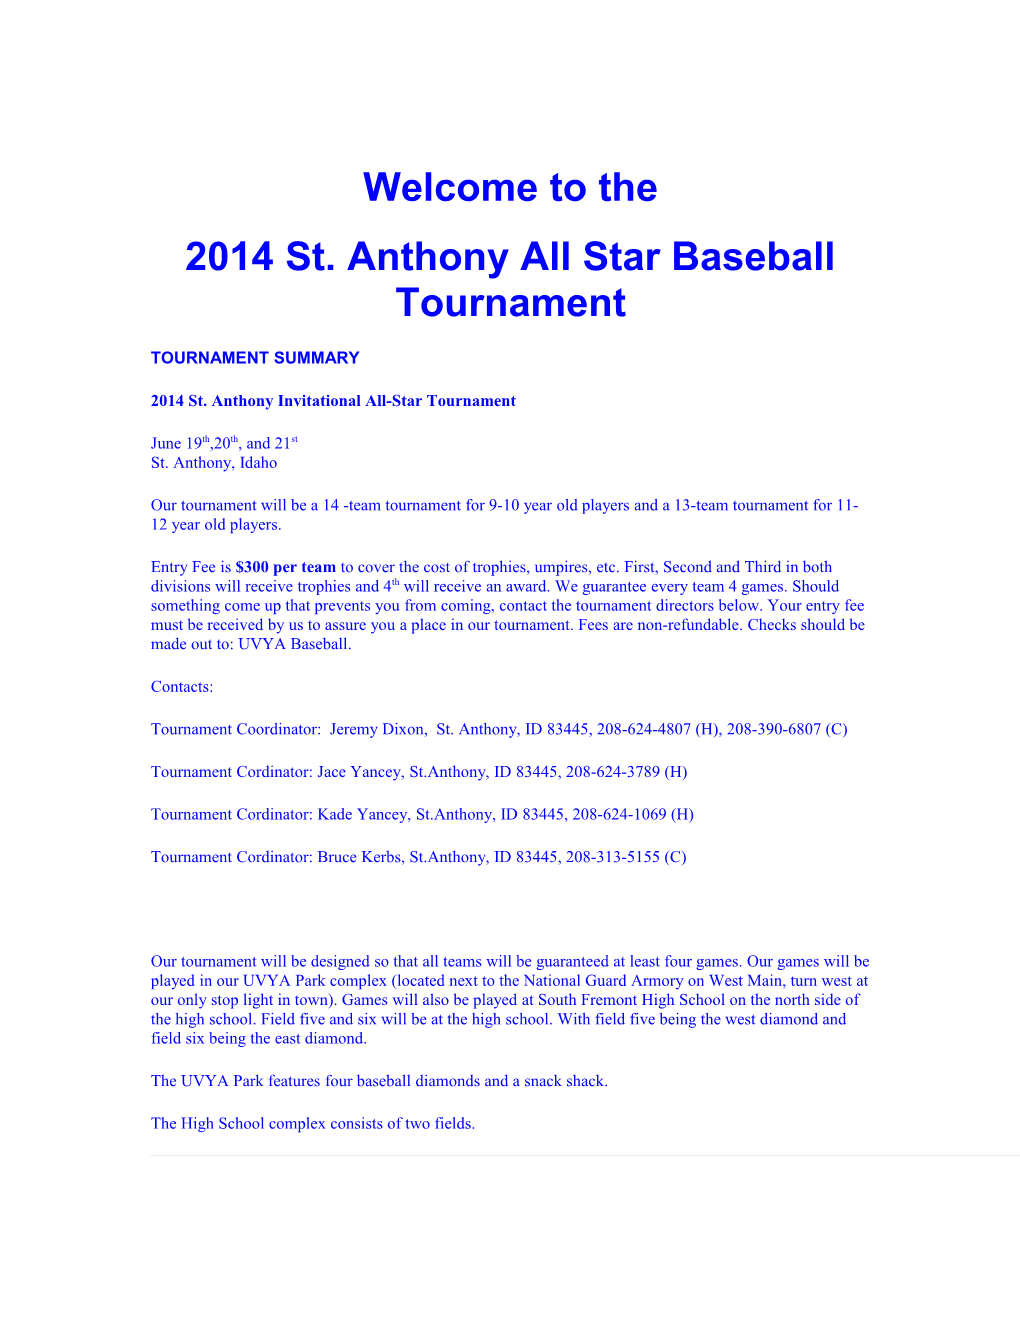 2014 St. Anthony All Star Baseball Tournament